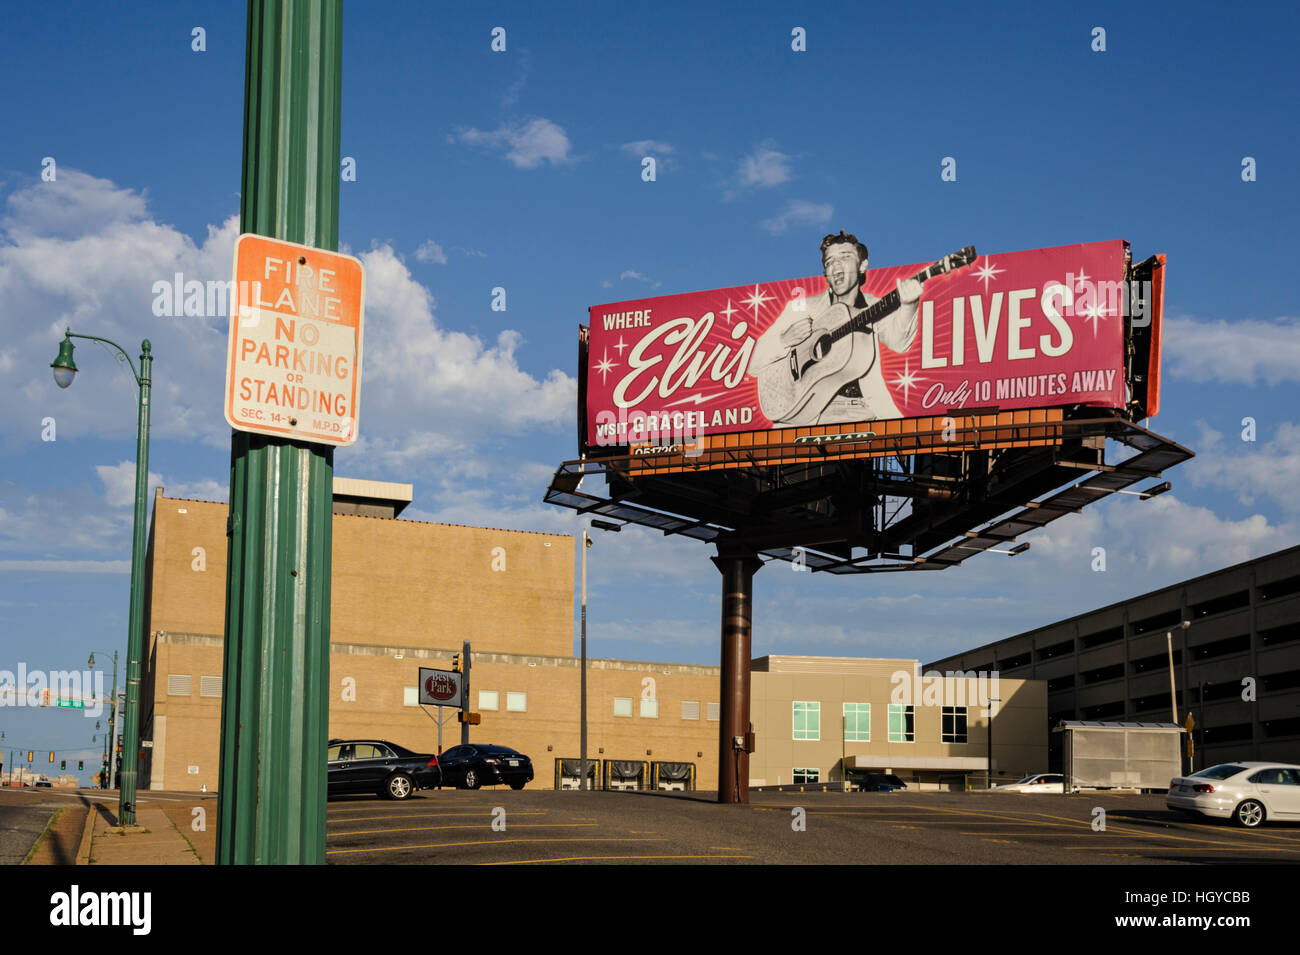 Panneau publicitaire pour Elvis Presley's Graceland, Memphis, Tennessee, États-Unis Banque D'Images